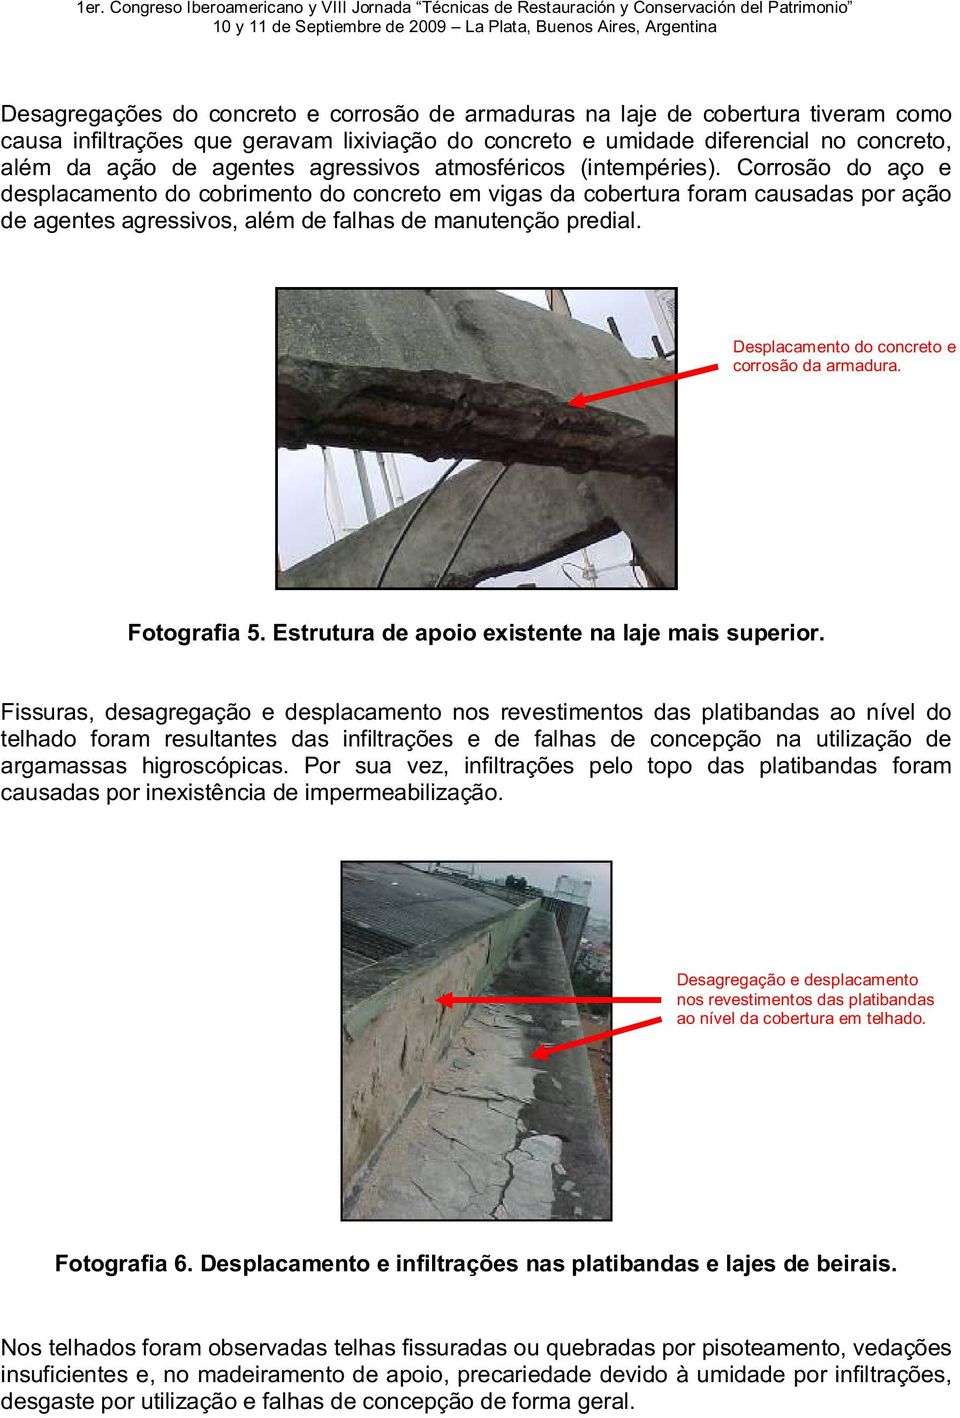 Corrosão do aço e desplacamento do cobrimento do concreto em vigas da cobertura foram causadas por ação de agentes agressivos, além de falhas de manutenção predial.